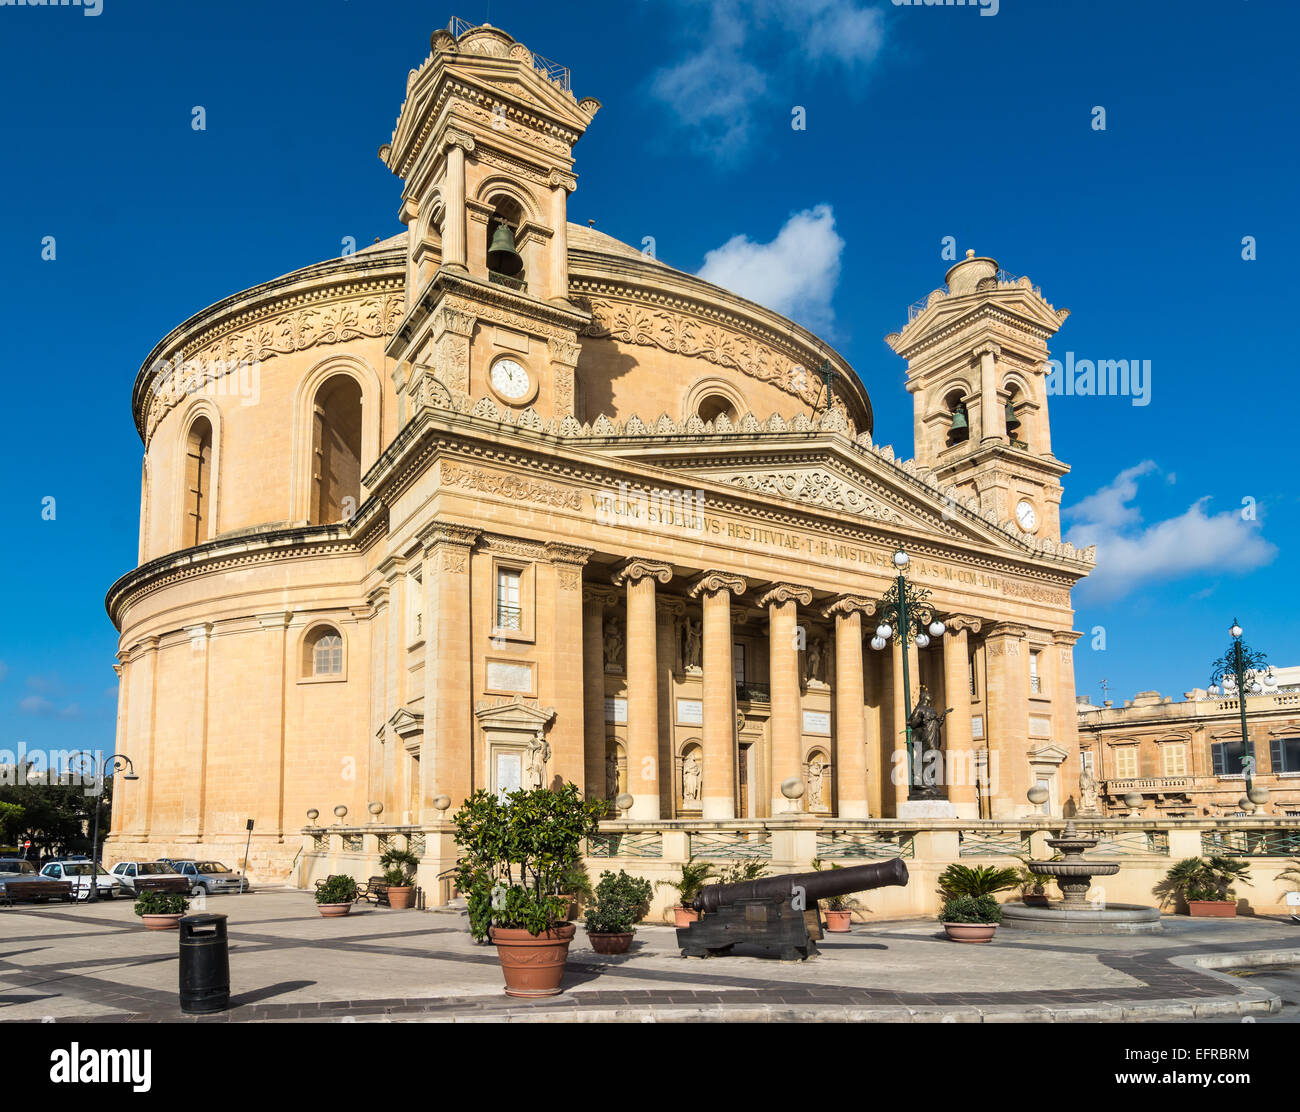 La famosa chiesa di Santa Maria in Mosta a Malta talvolta noto come la Rotonda di Mosta o il duomo di Mosta. È la terza più grande Foto Stock